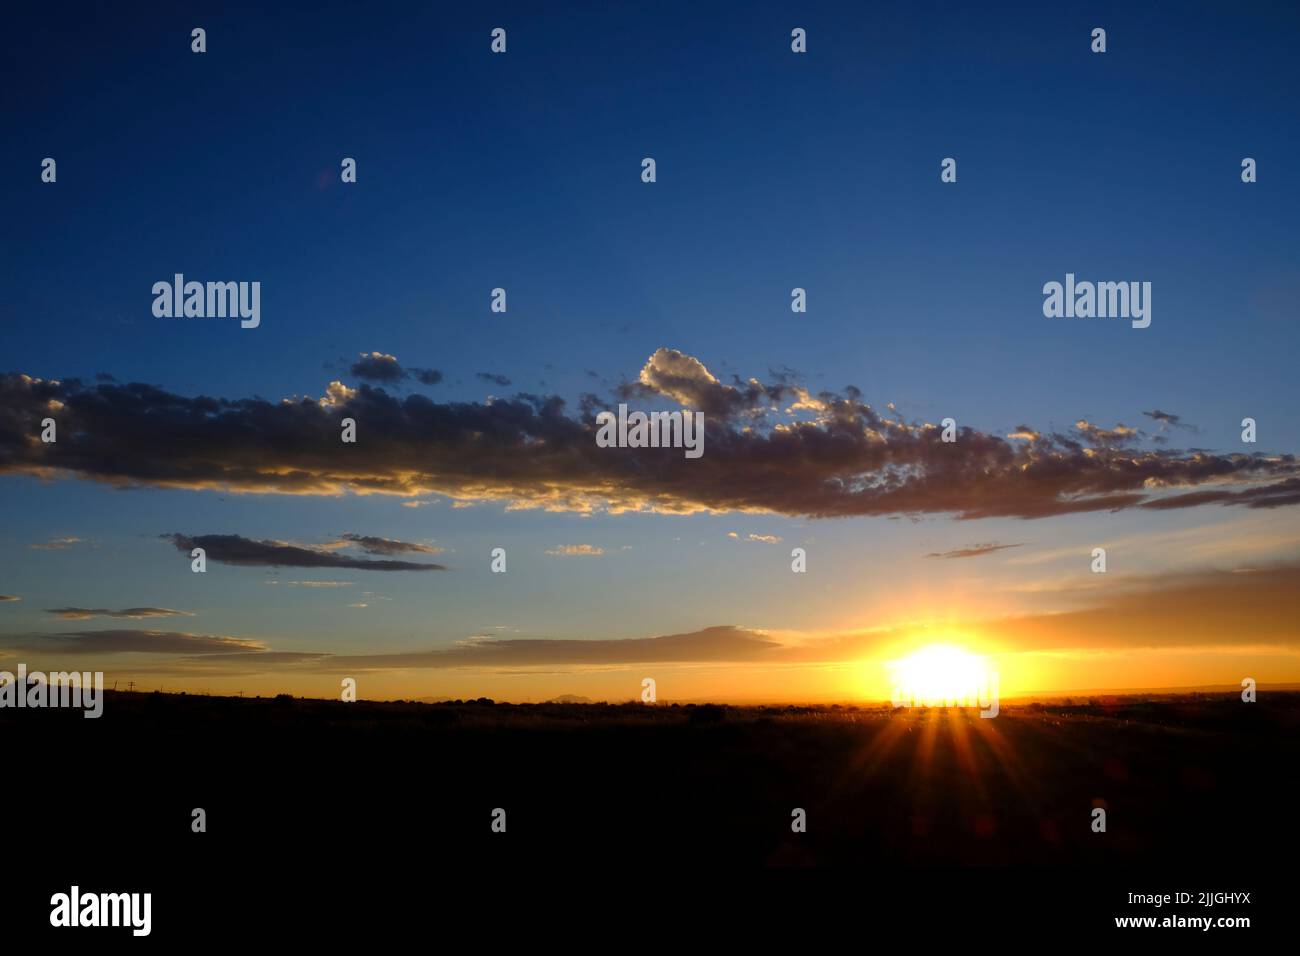 La puesta de sol o la salida del sol se levanta con la estrella del sol y los rayos de luz dorada y las nubes en el cielo azul Foto de stock